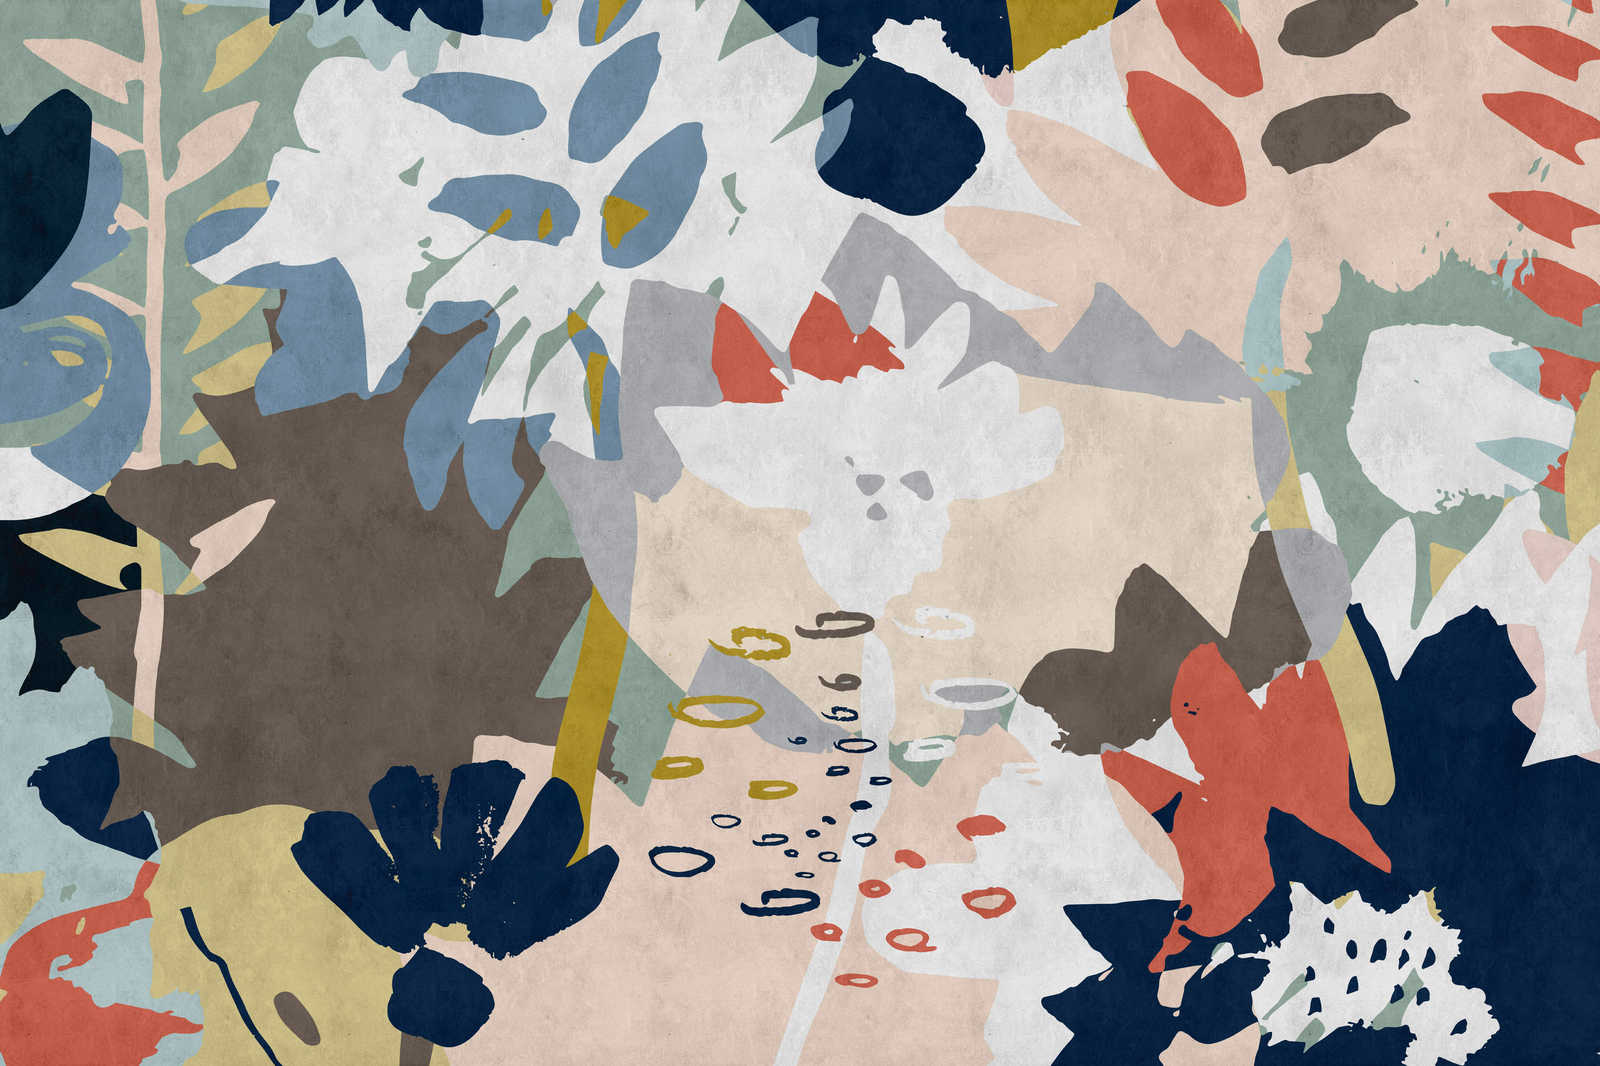             Floral Collage 4 - Leinwandbild mit buntem Blattmotiv - Löschpapier Struktur – 0,90 m x 0,60 m
        